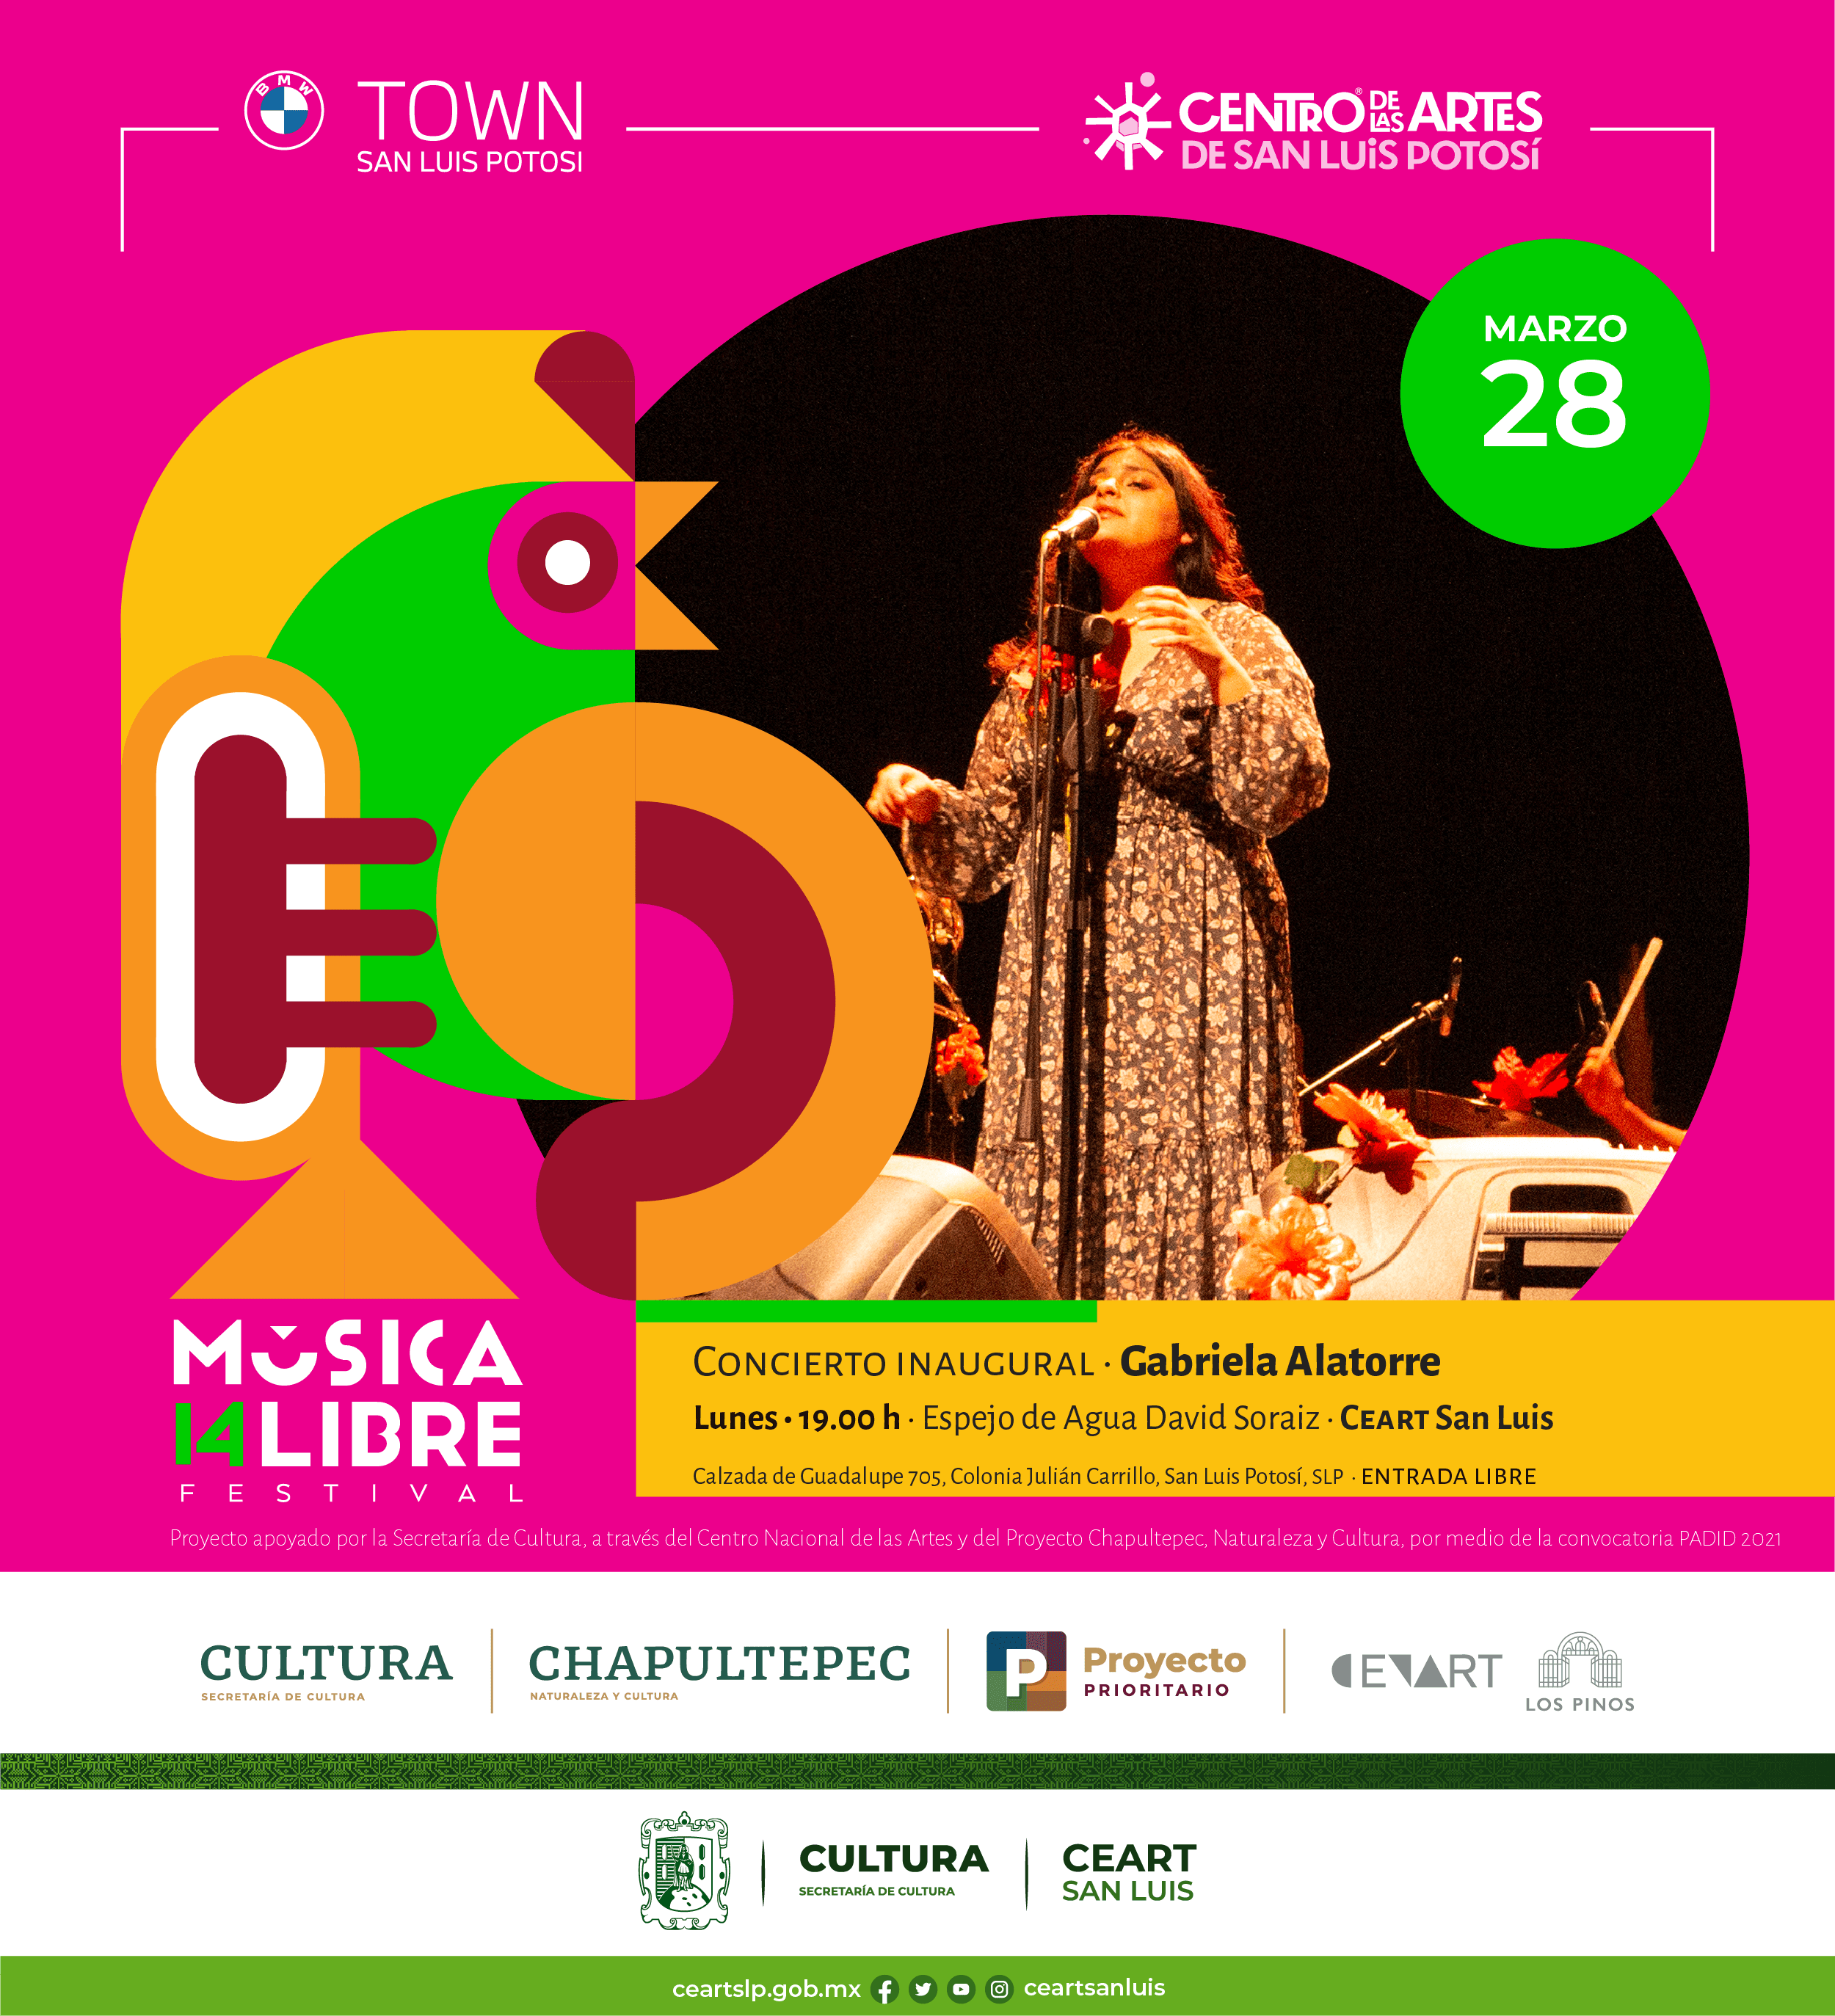 El concierto inaugural lo dará Gabriela Alatorre y se llevará a cabo este lunes 28 de marzo, a las 19:00 h en el Ceart San Luis